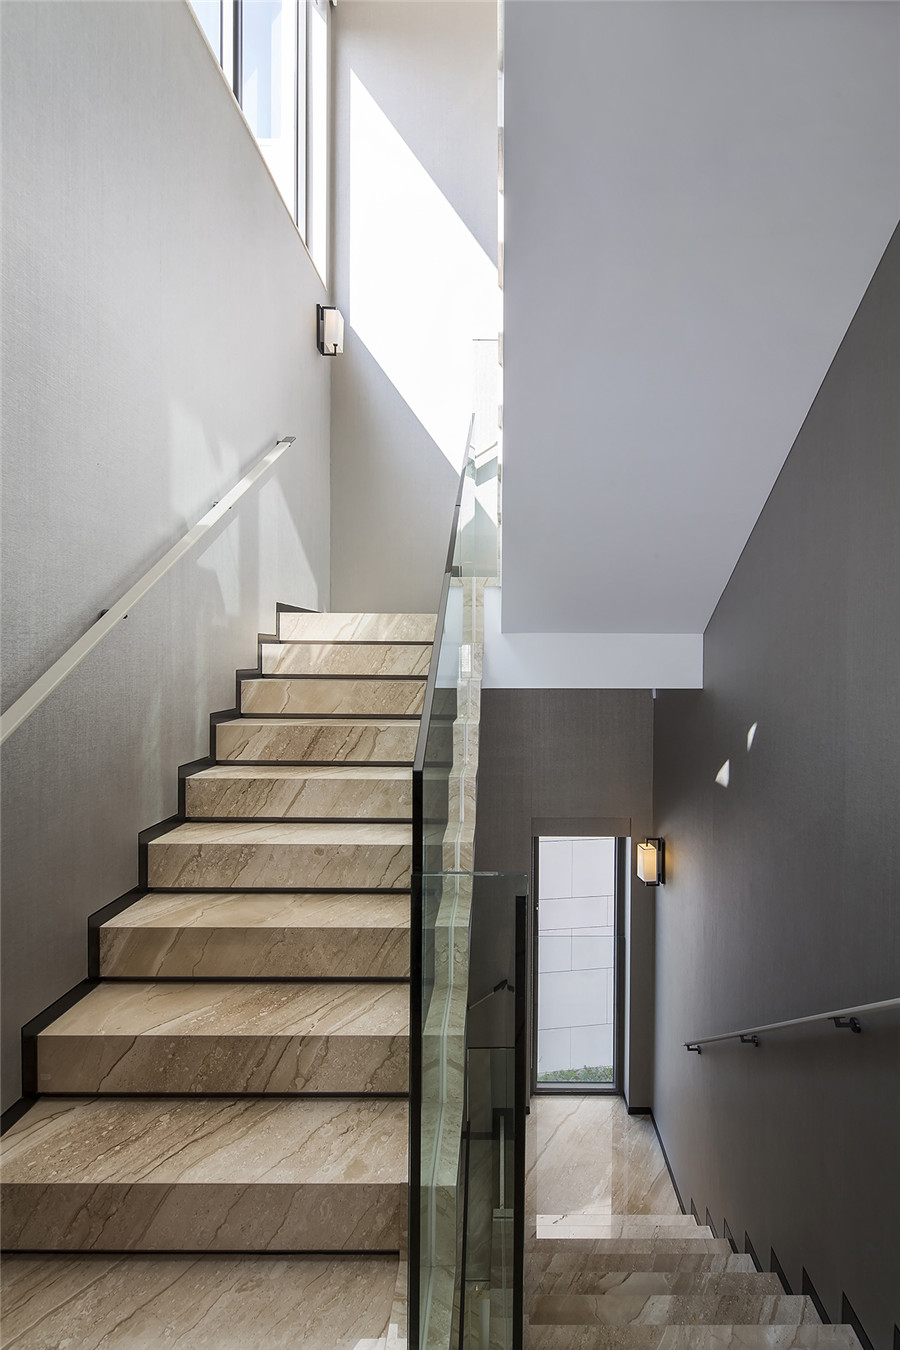 简约风格设计室内楼梯踏步装修效果图